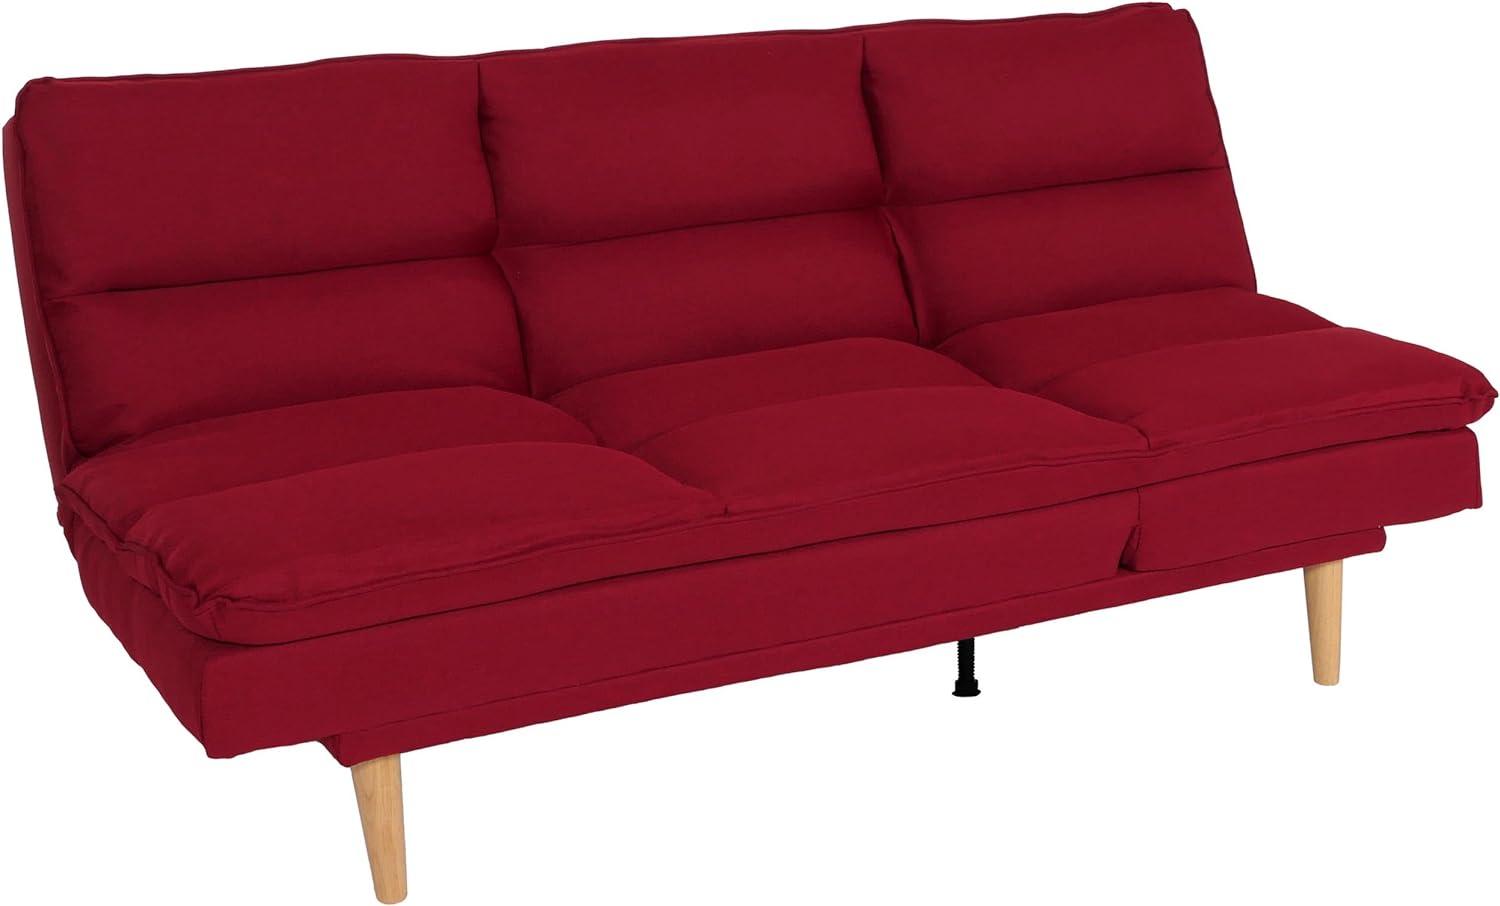 Schlafsofa HWC-M79, Gästebett Schlafcouch Couch Sofa, Schlaffunktion Liegefläche 180x110cm ~ Stoff/Textil bordeaux Bild 1